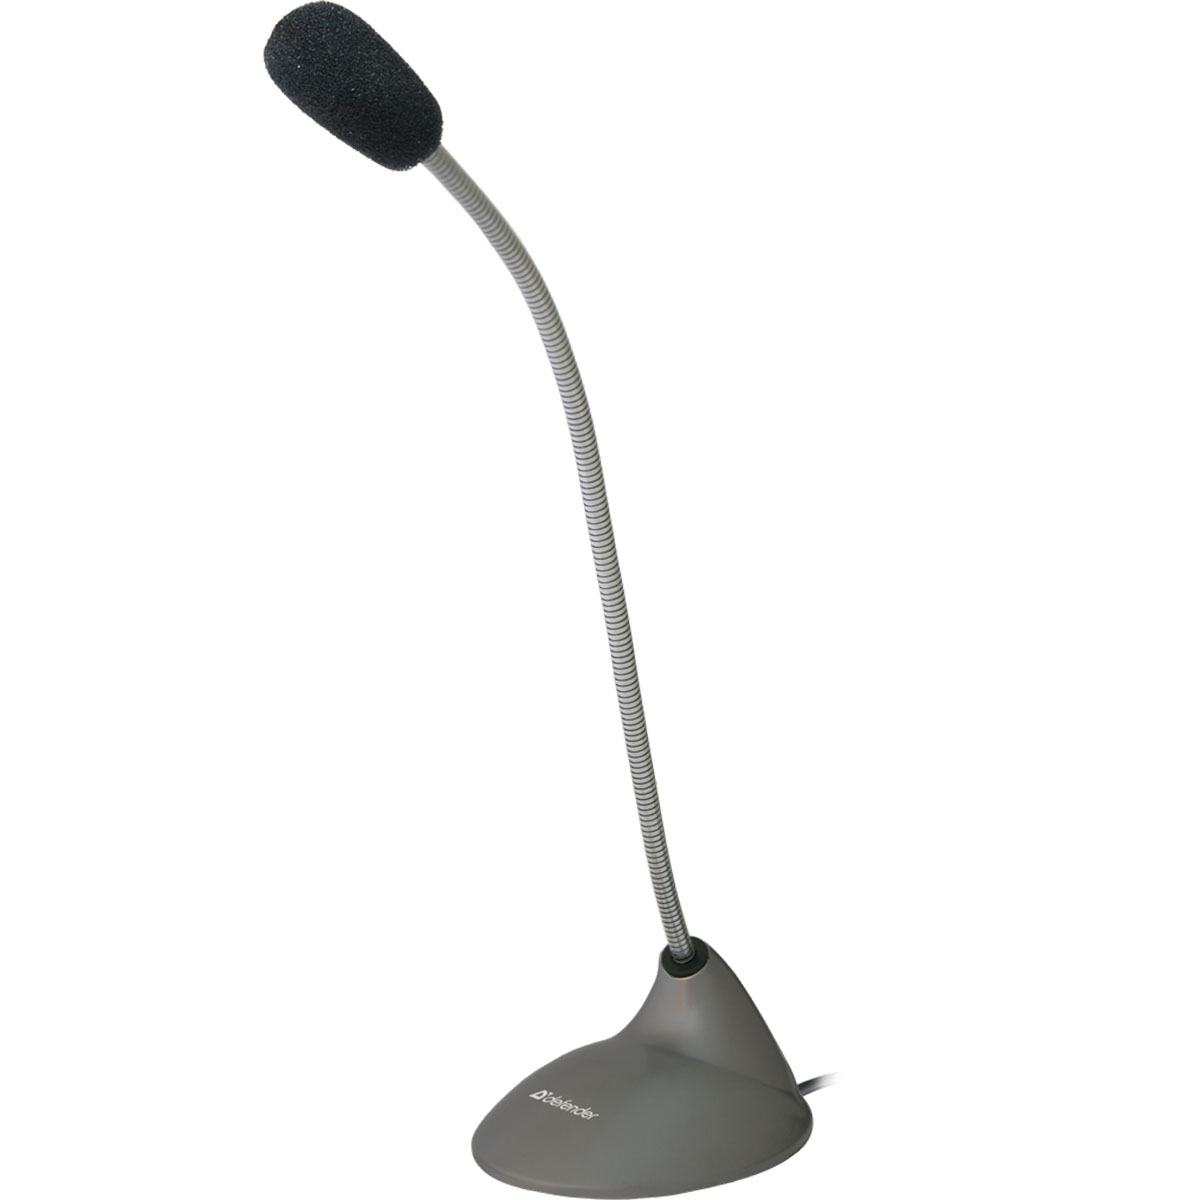 Микрофон компьютерный DEFENDER MIC-111, кабель 1.5 метра, цвет серый